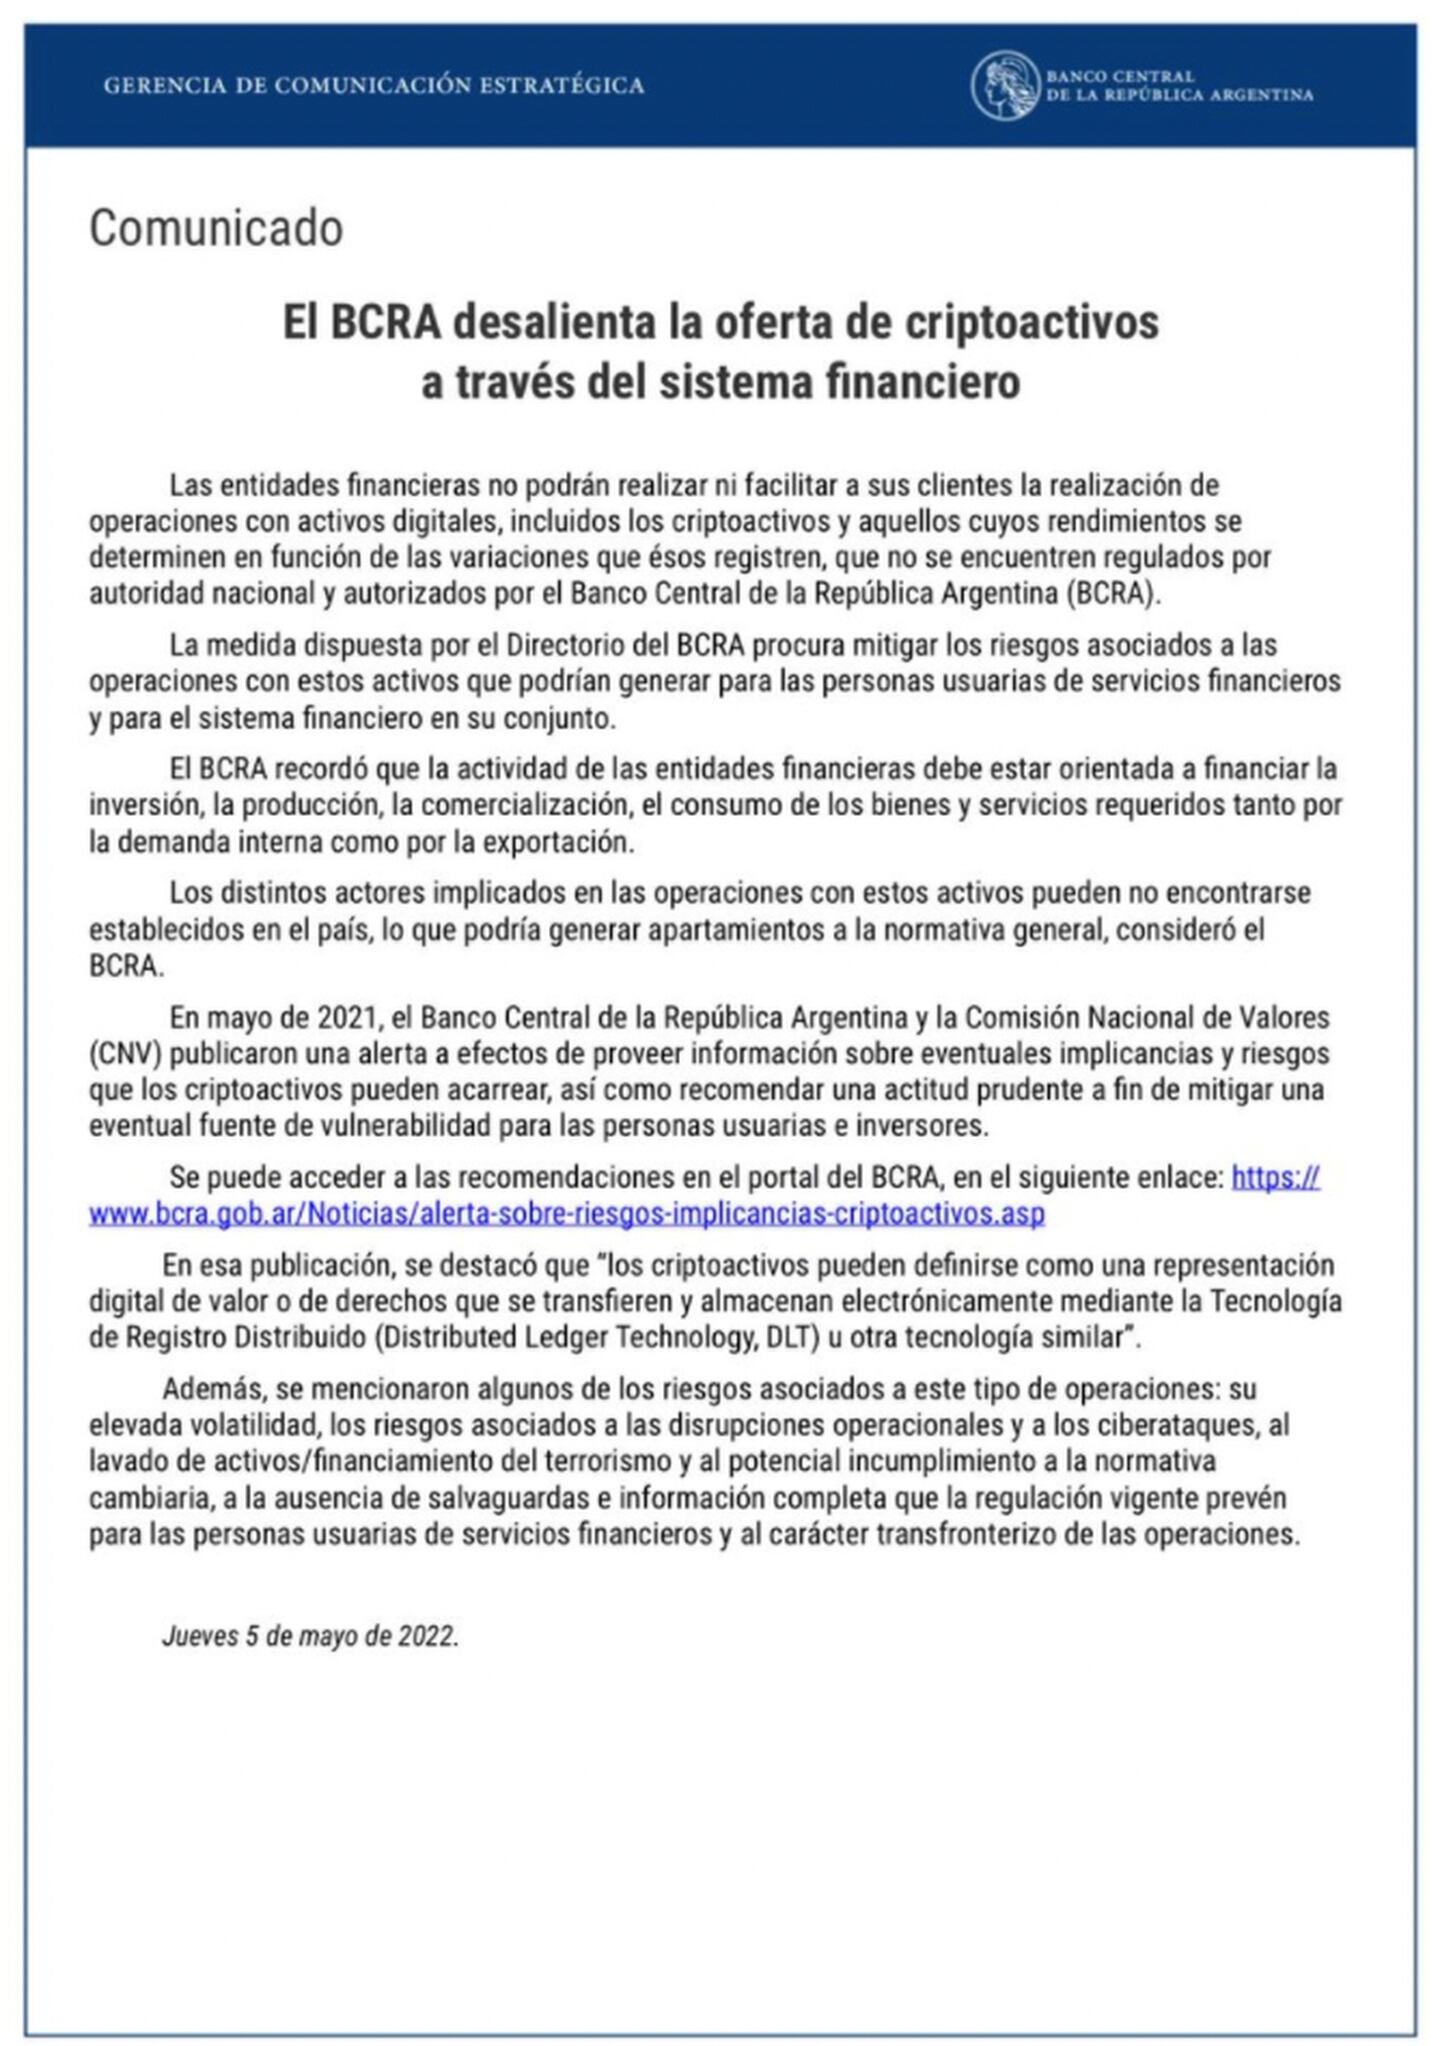 El comunicado del BCRA que prohibió las operaciones cripto por parte de los bancos argentinos.dfd